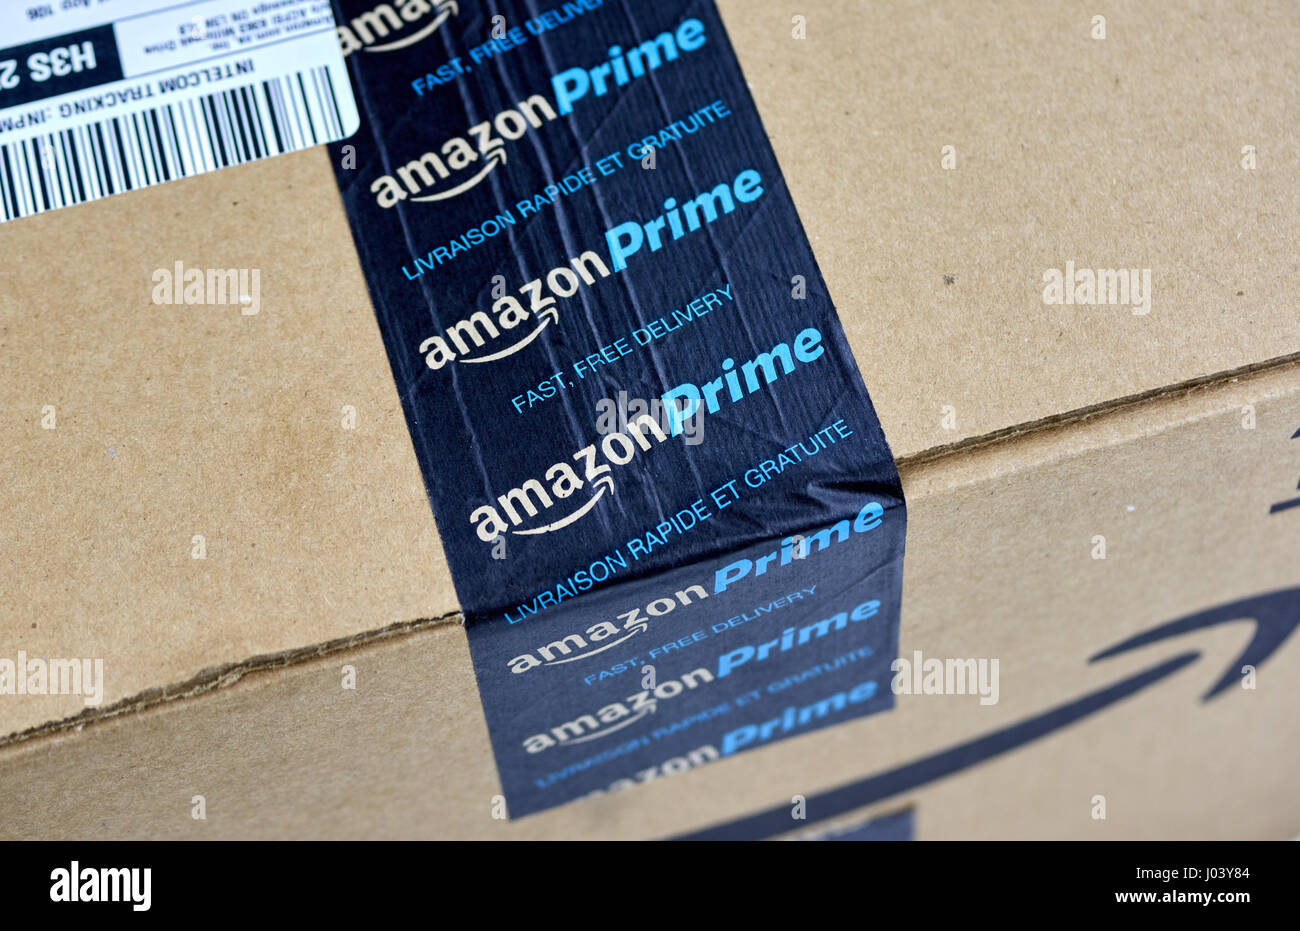 MONTREAL, Canadá - 28 de marzo de 2017: Amazonas caja de envío con cinta de marca. Amazonas es un americano de comercio electrónico y cloud computing co Foto de stock